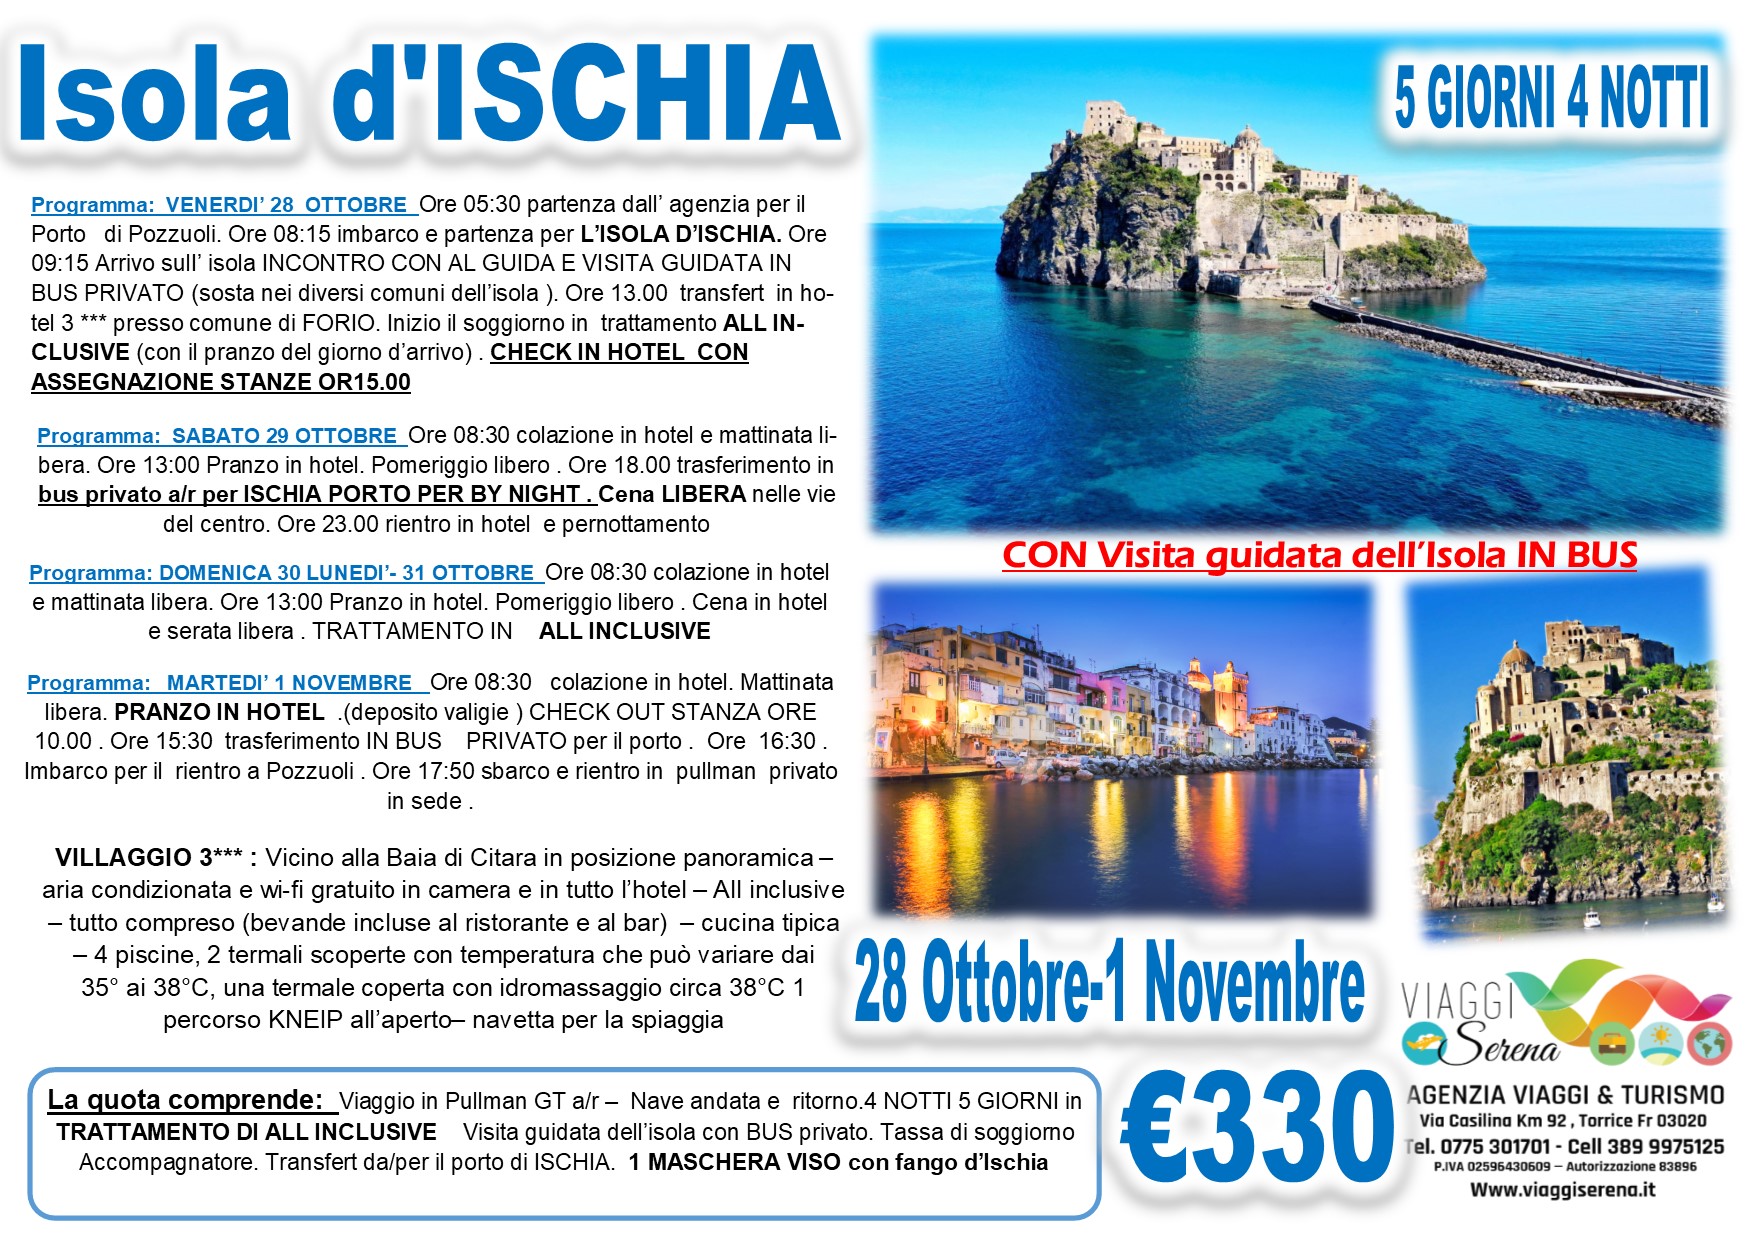 Viaggi di Gruppo:  Soggiorno Relax e Termale “Isola d’ISCHIA” 28 Ottobre-1 Novembre € 330,00